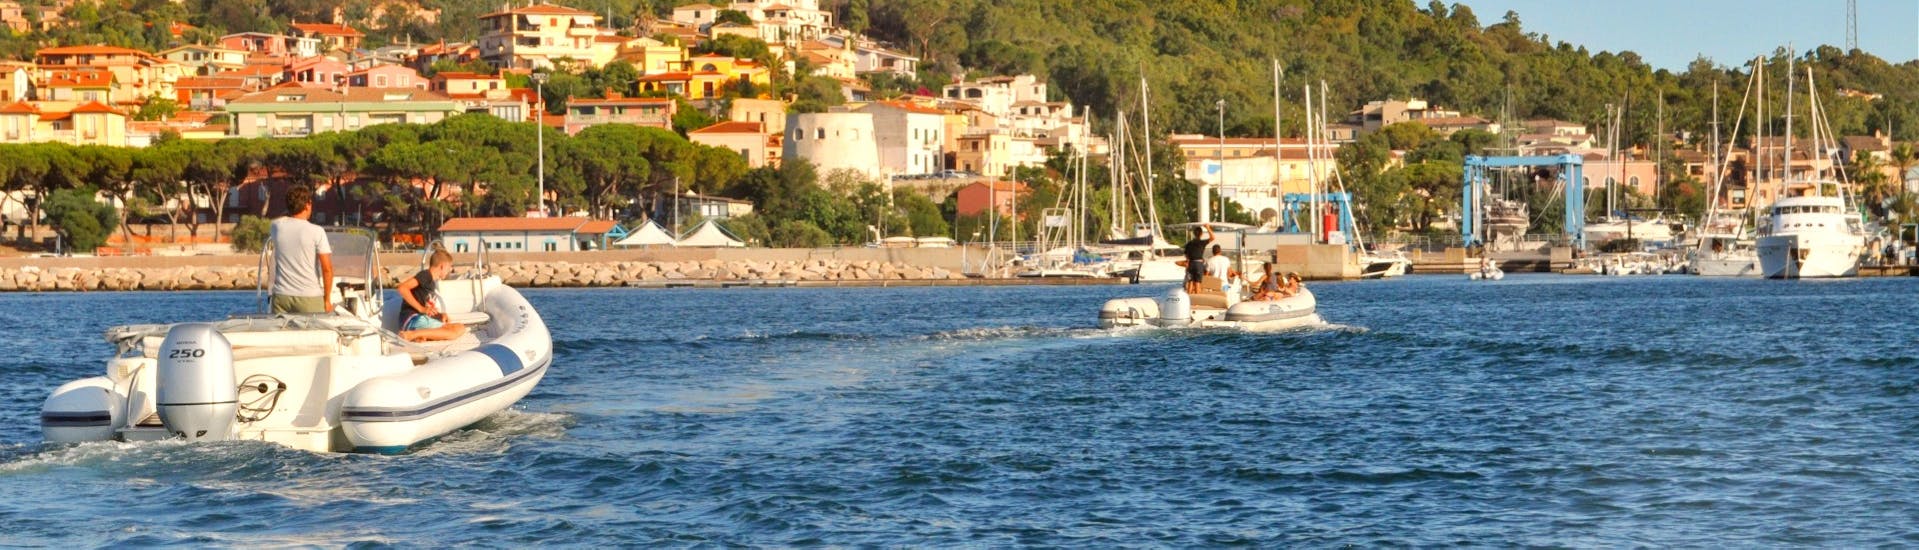 Zwei Boote von RIB-Bootsverleihs in Arbatax (bis zu 10 Personen) mit Führerschein mit Velamare Arbatax fahren vor der Küste.